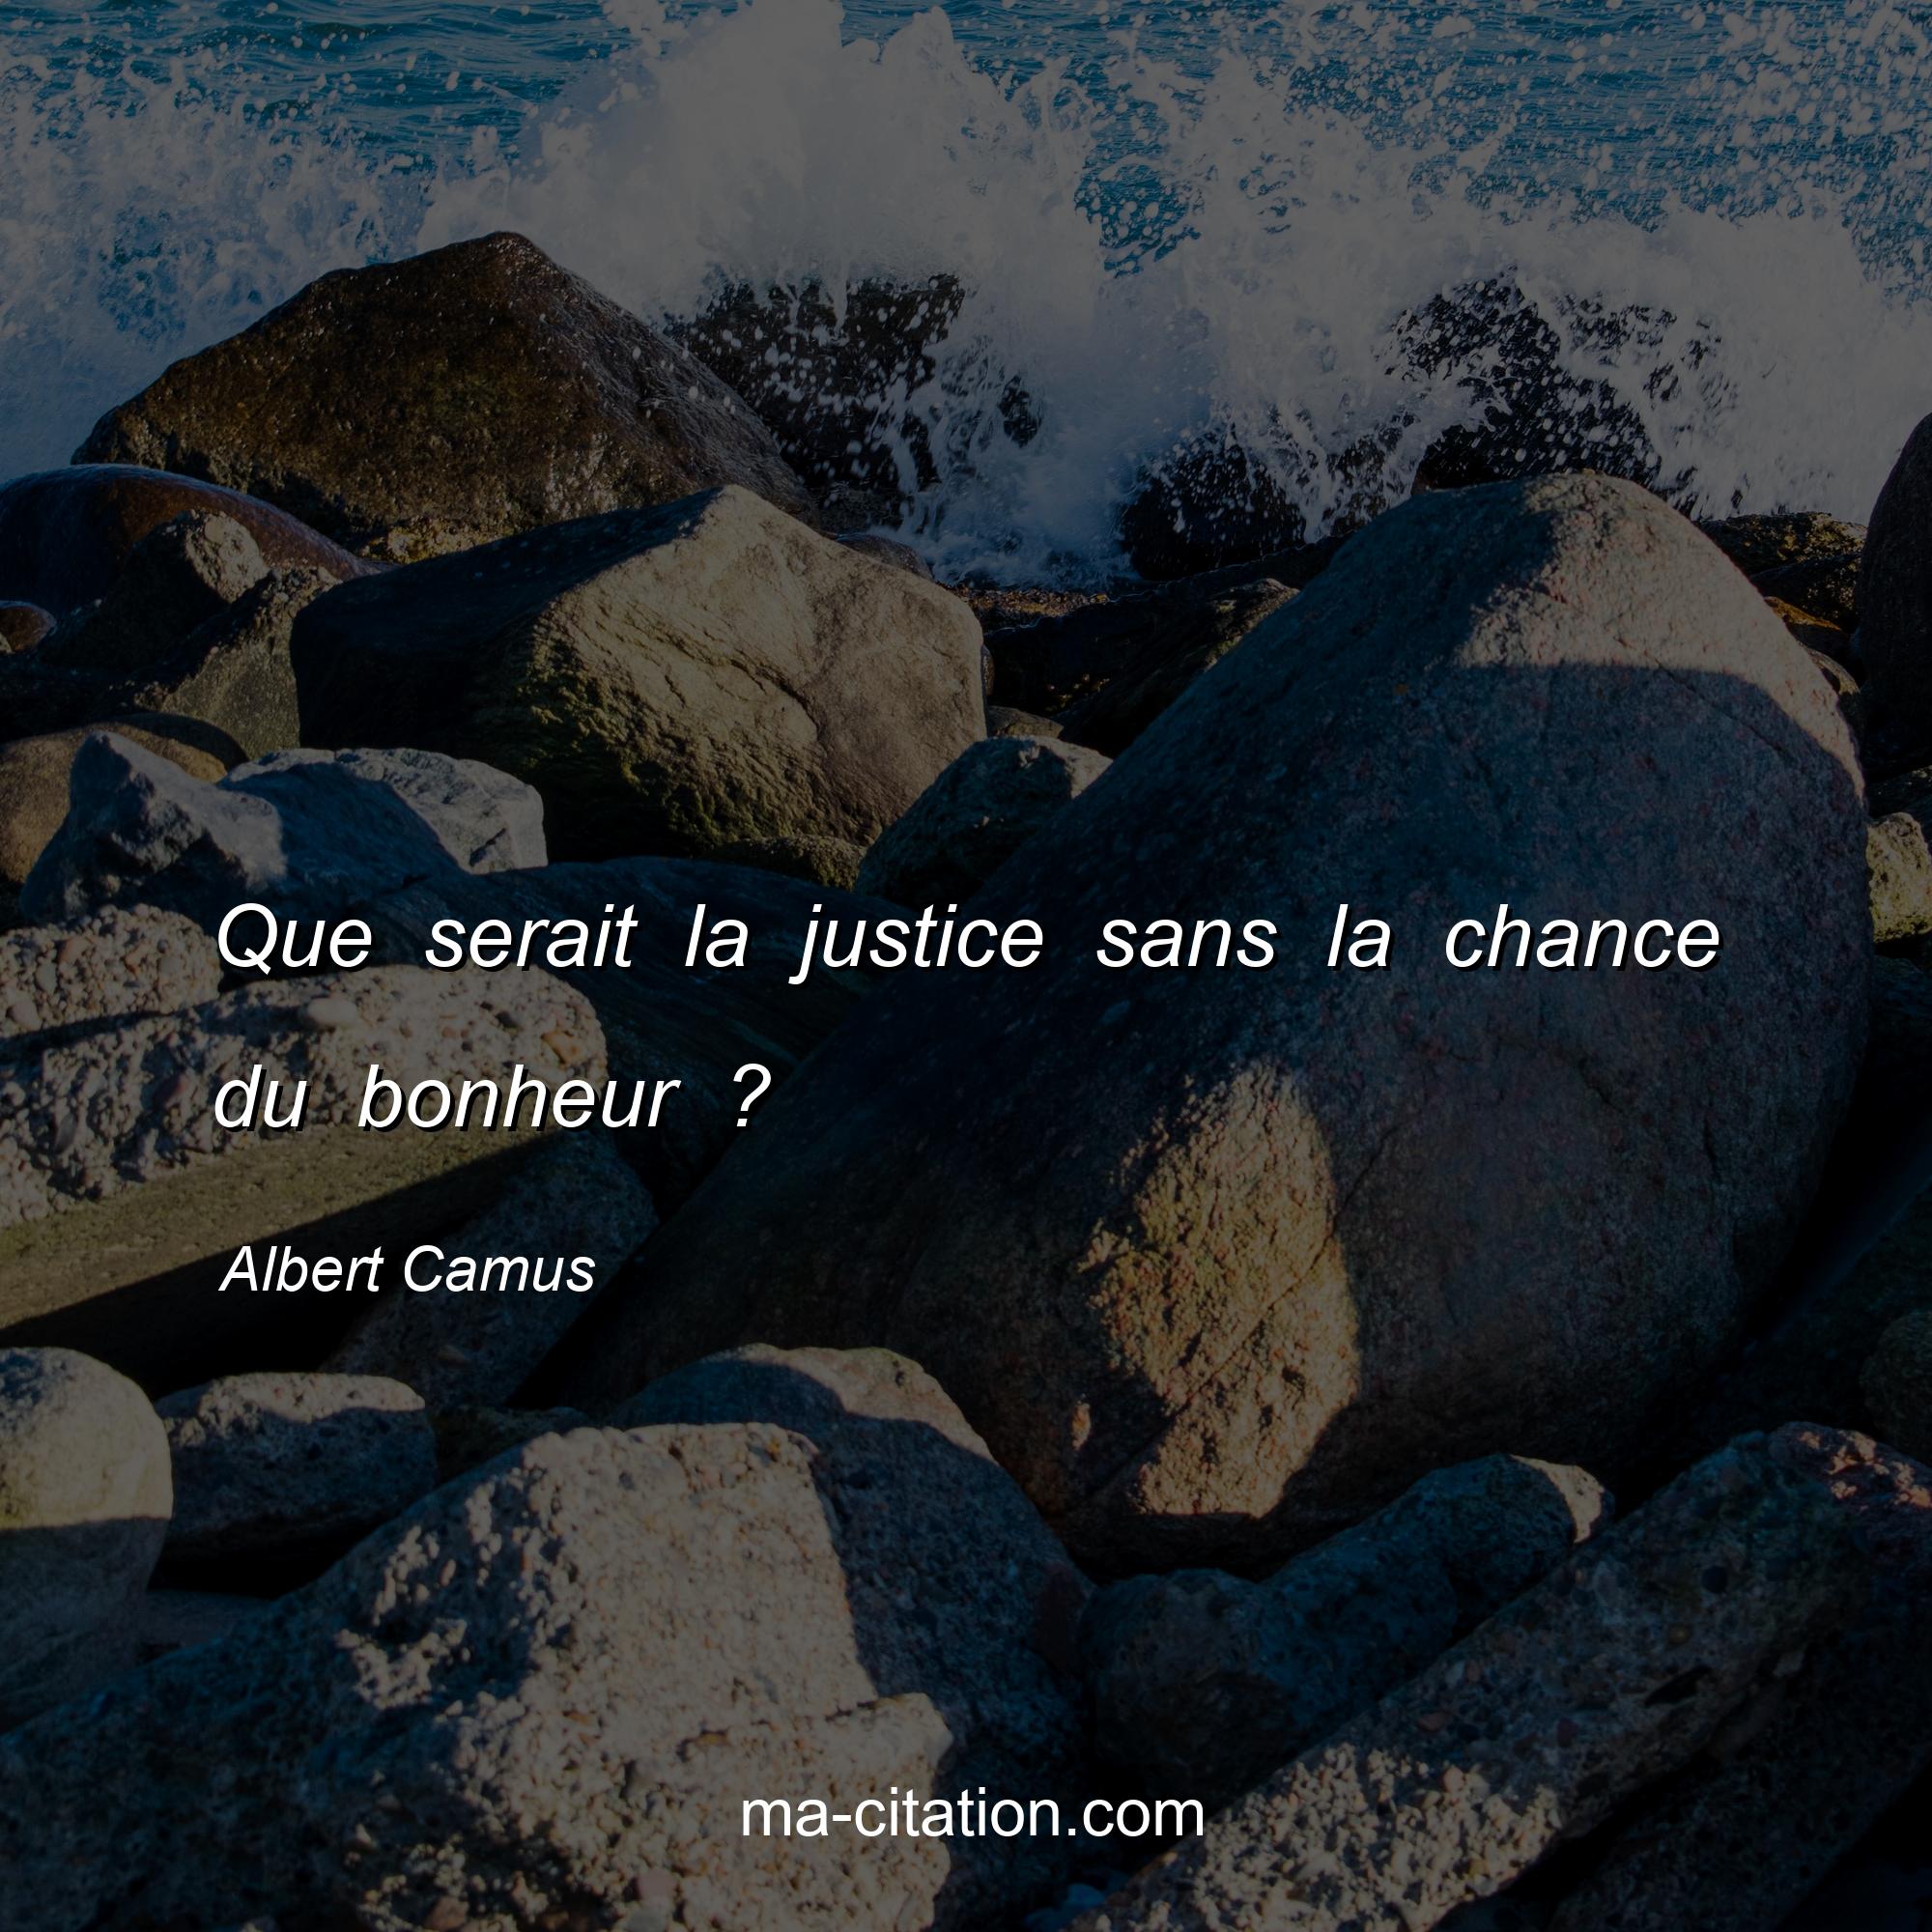 Albert Camus : Que serait la justice sans la chance du bonheur ?